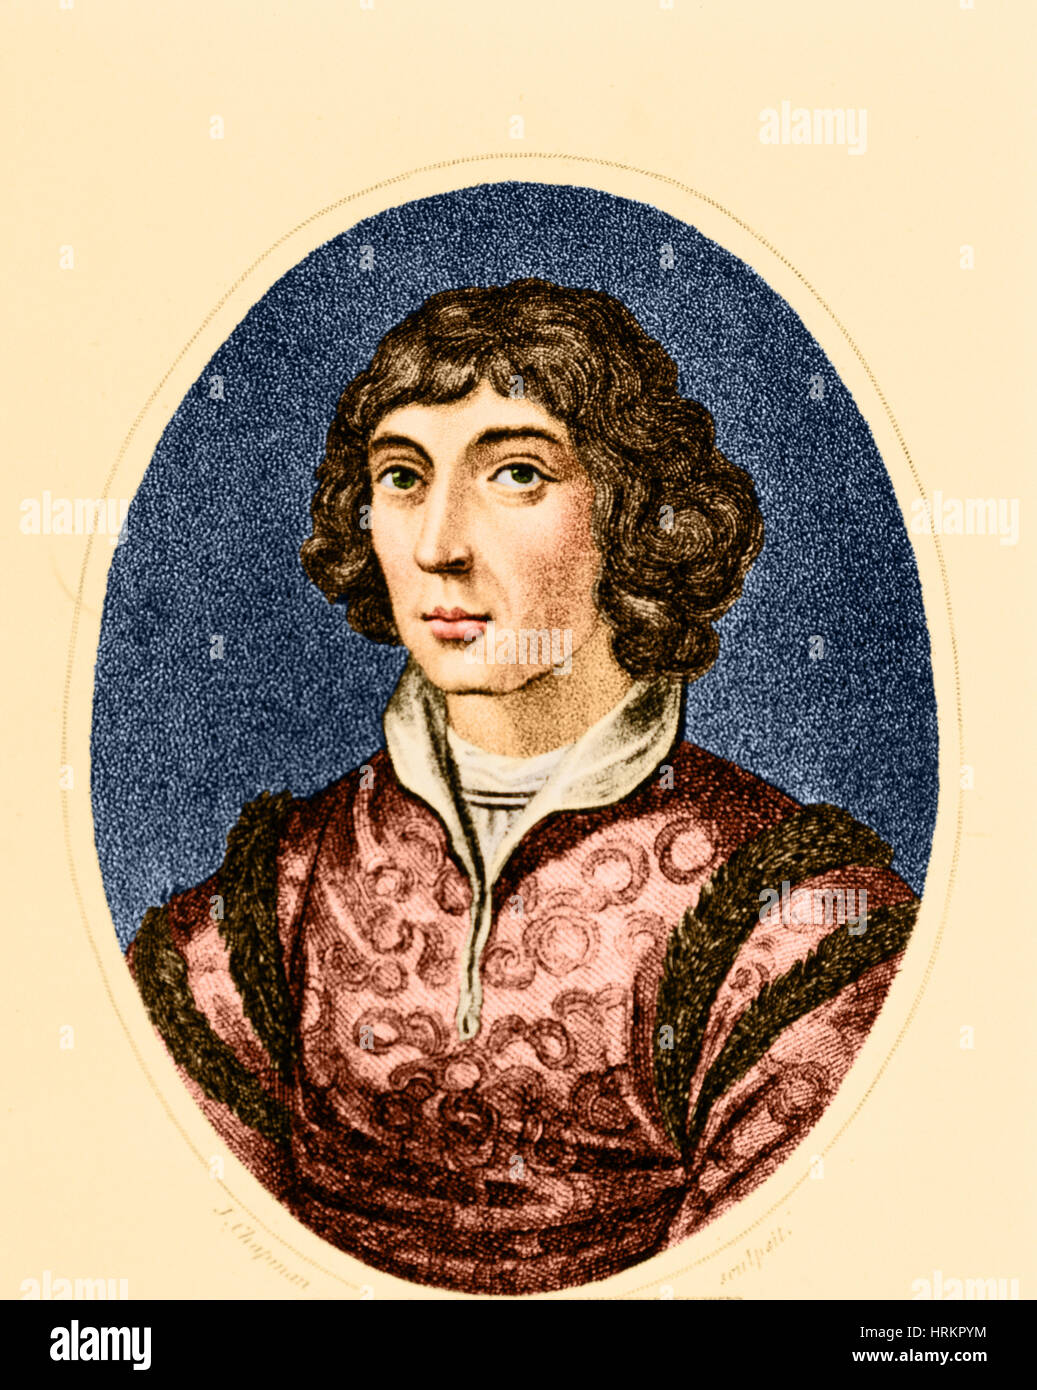 Николай Коперник в детстве